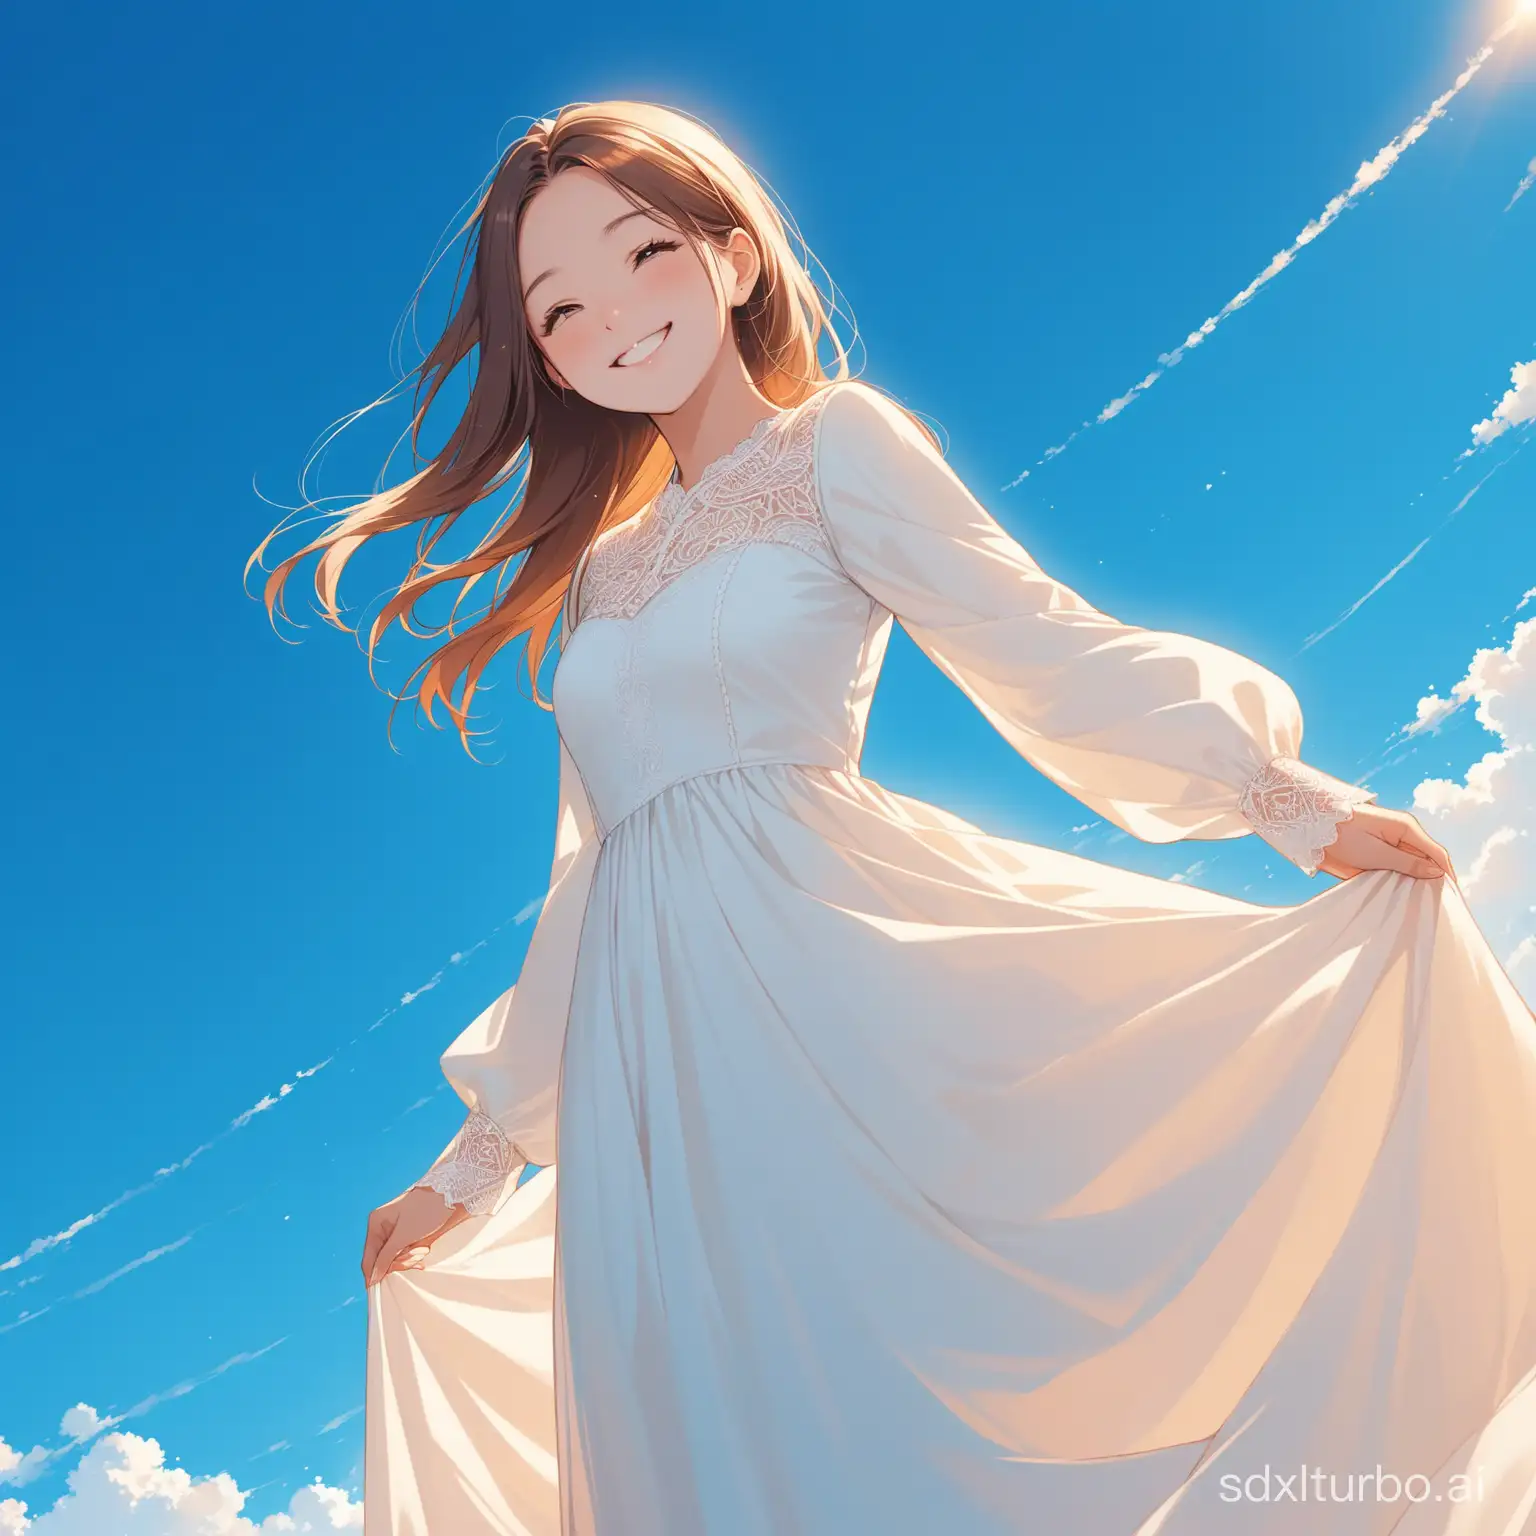 Smiling-Girl-in-White-Dress-against-Blue-Sky